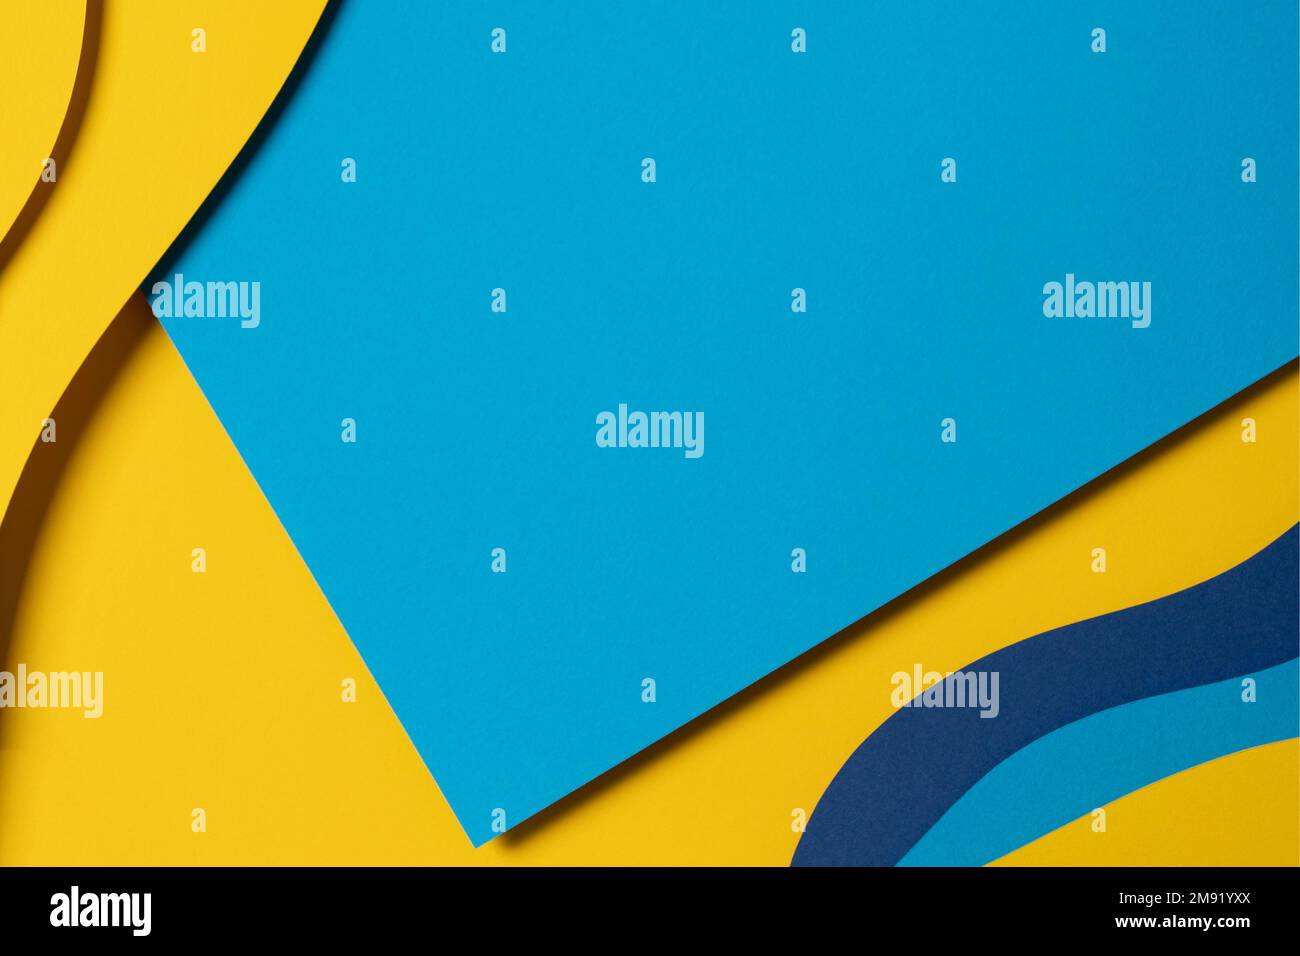 Abstrakter farbiger Papierhintergrund. Minimale Zusammensetzung des Papierschnitts mit Lagen geometrischer Formen und Linien in Hellblau, Marineblau und Gelb Stockfoto